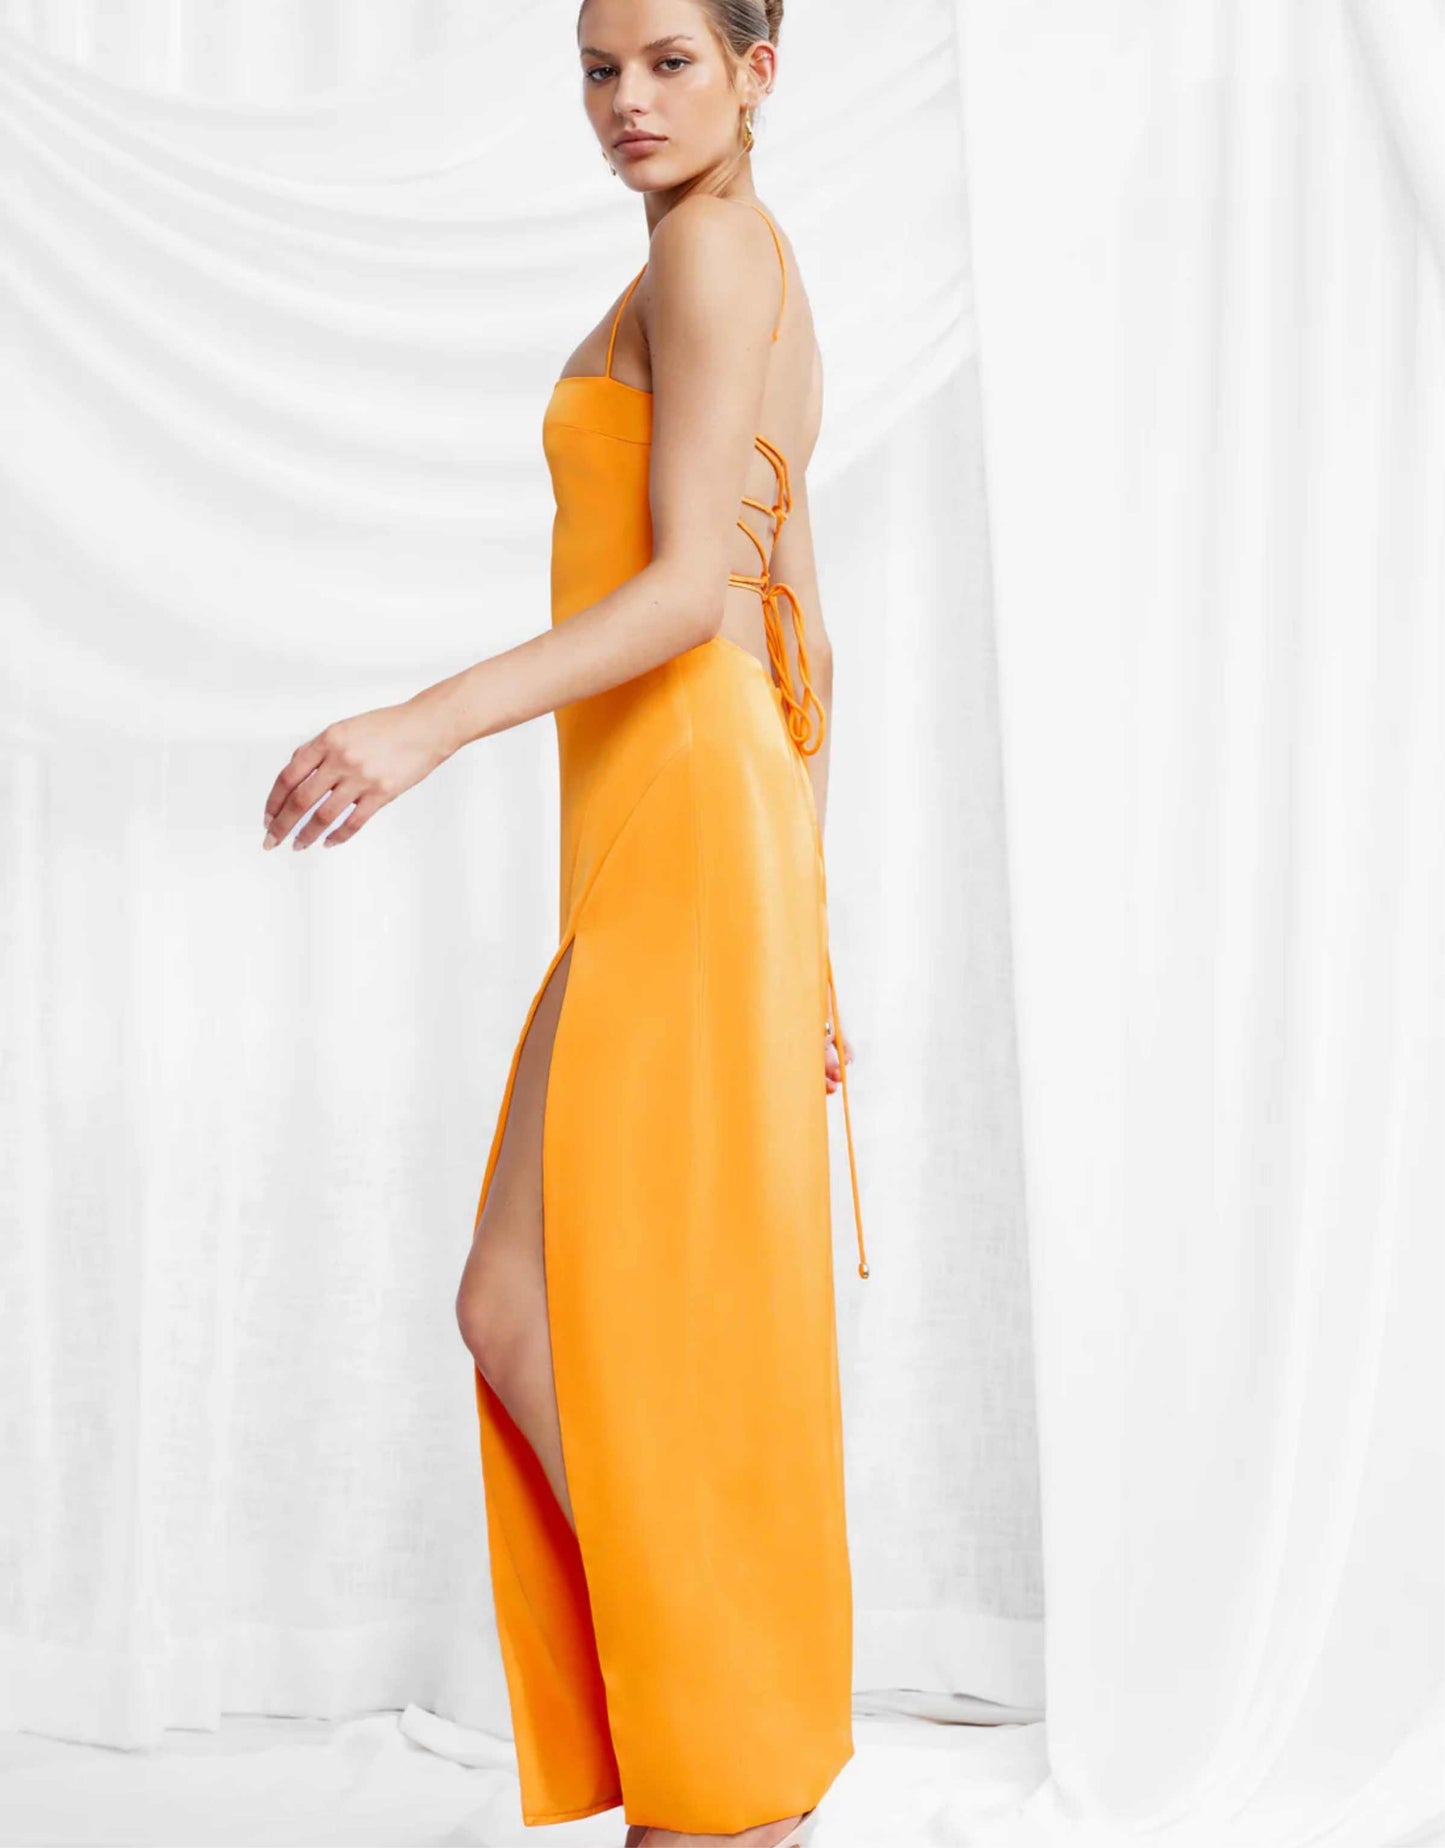 Lexi - Orlando Dress, Mango